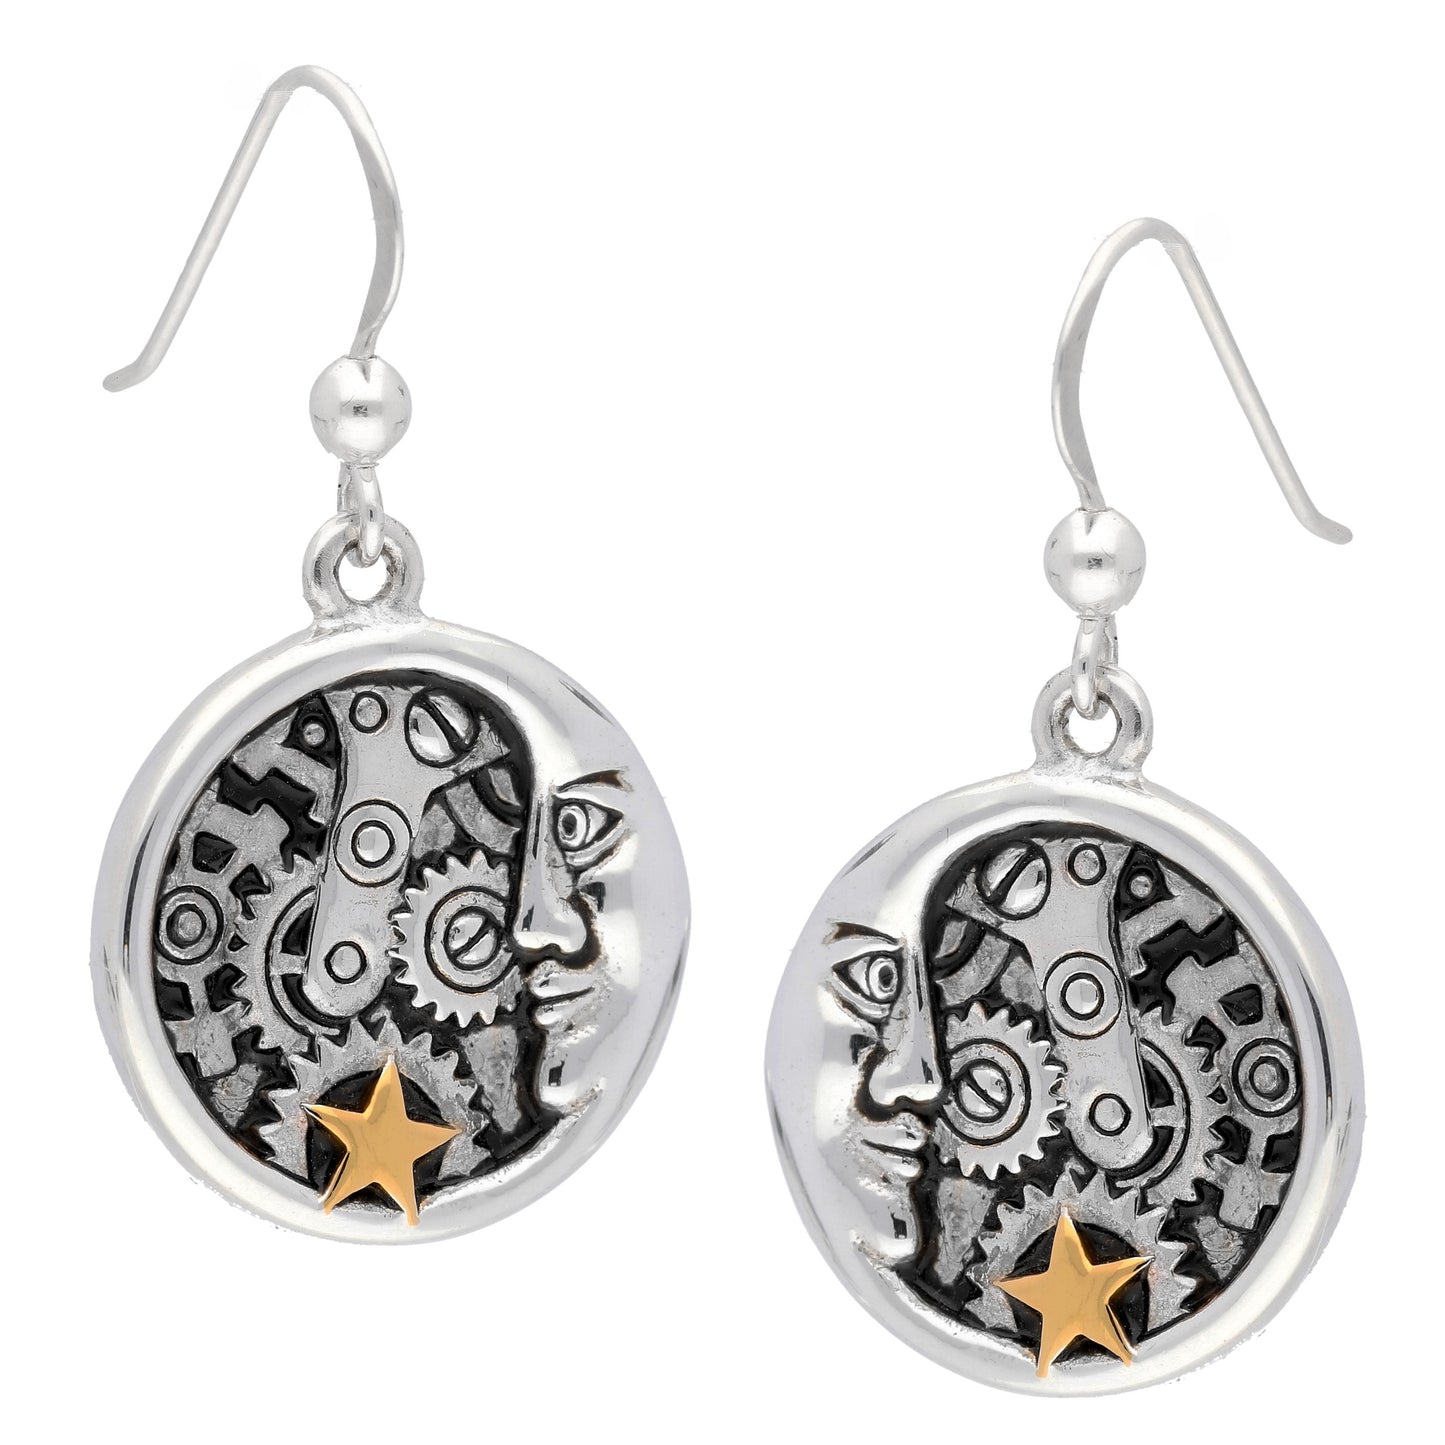 Lunar Crescent Moon Steampunk Clockwork Sterling Silver Hook Earrings - Silver Insanity